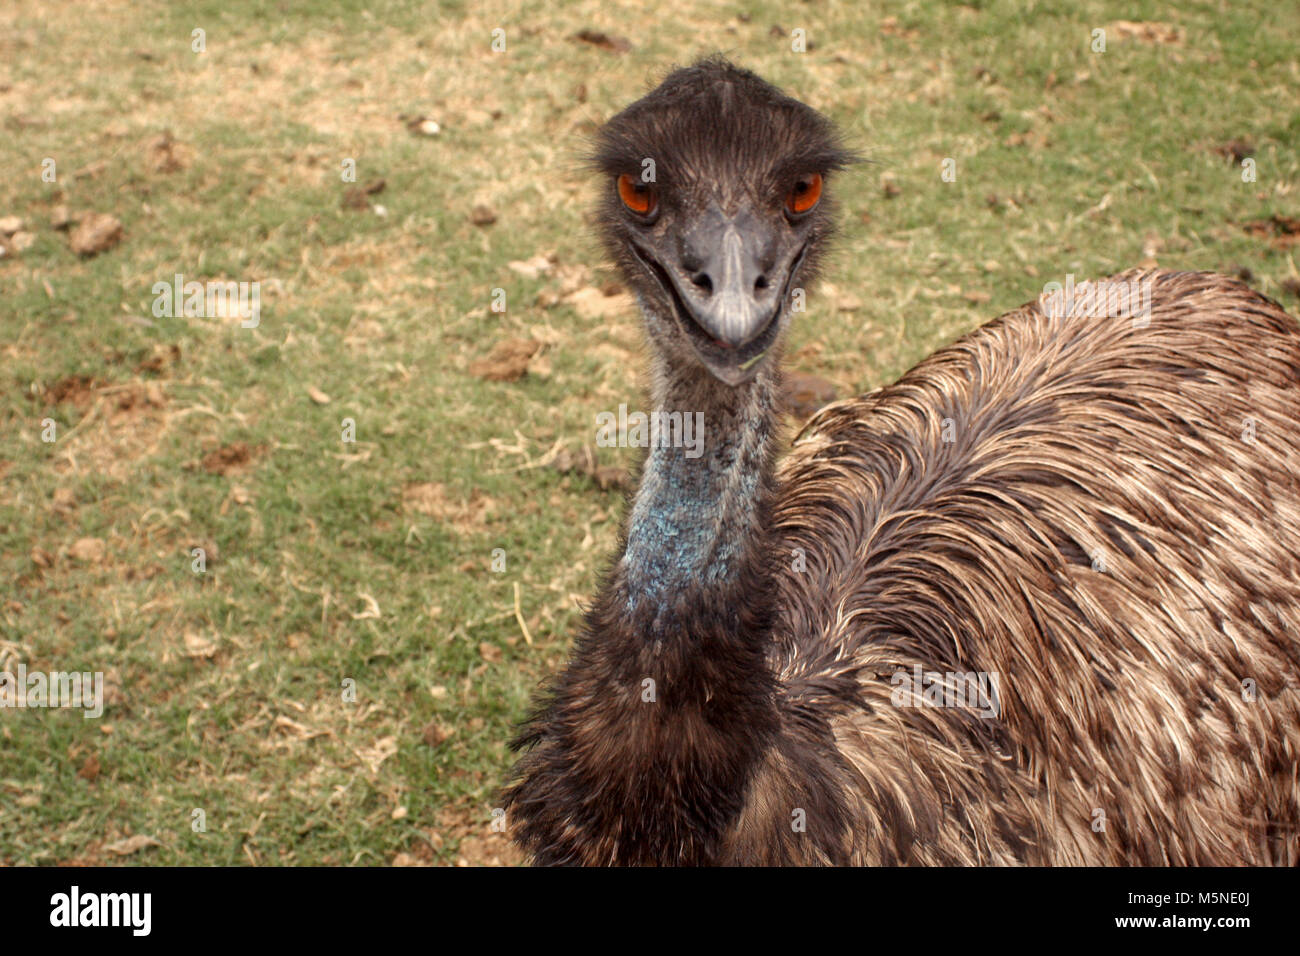 Close up of emu bird Stock Photo